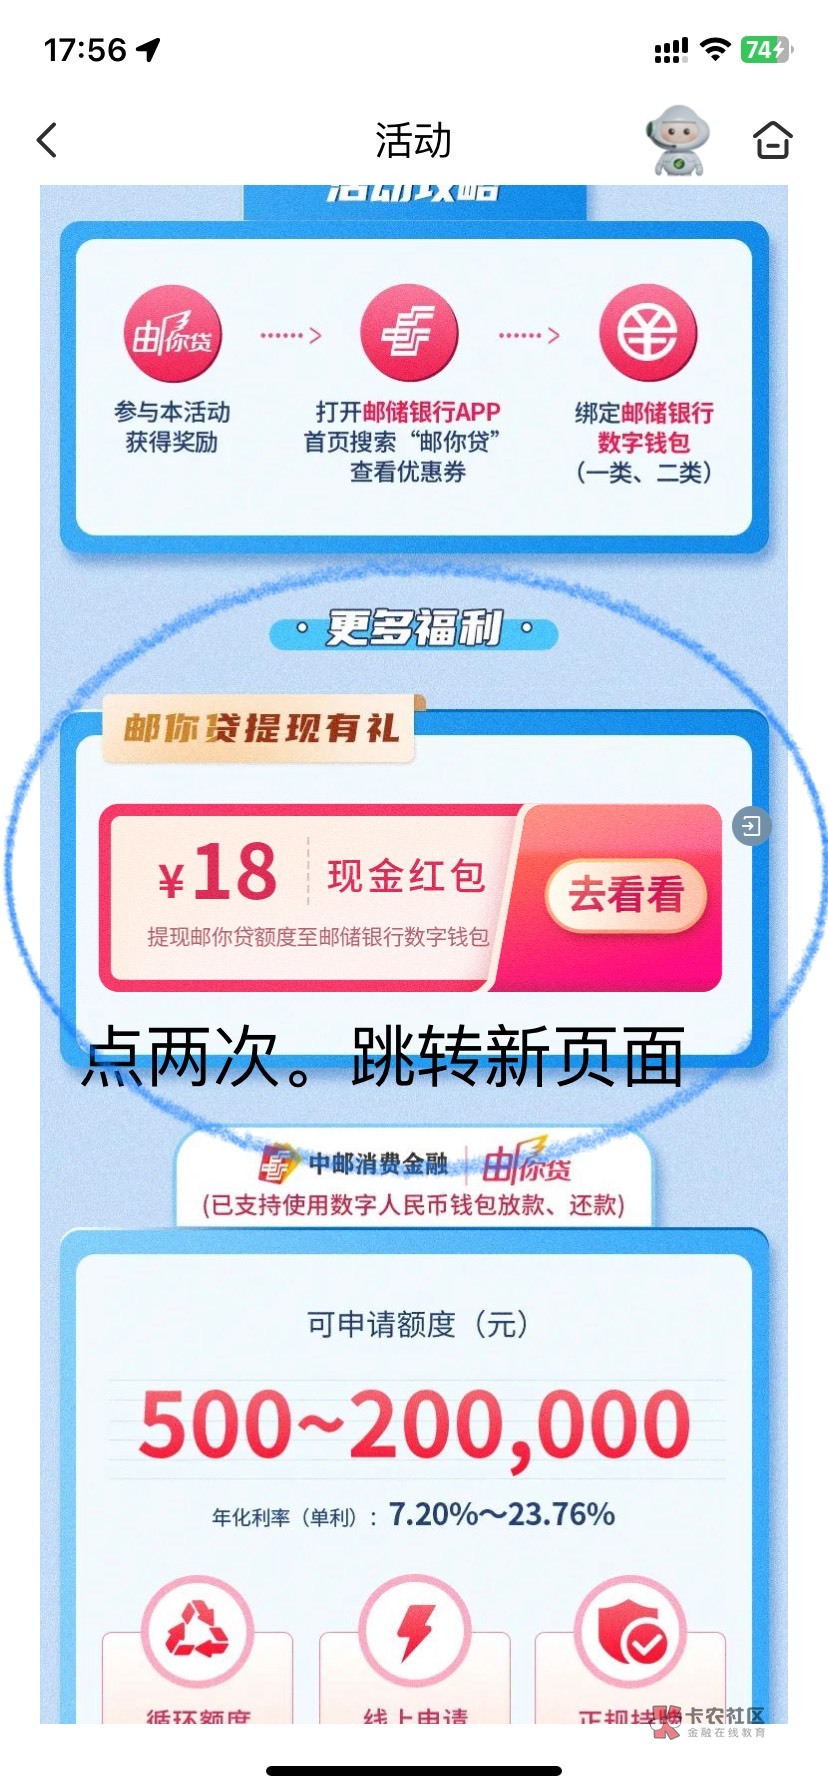 邮储-生活-本地服务-数字人民币--热门活动-左上角定位上海-全国下滑-申请抽88数币。邮49 / 作者:黑与白111 / 